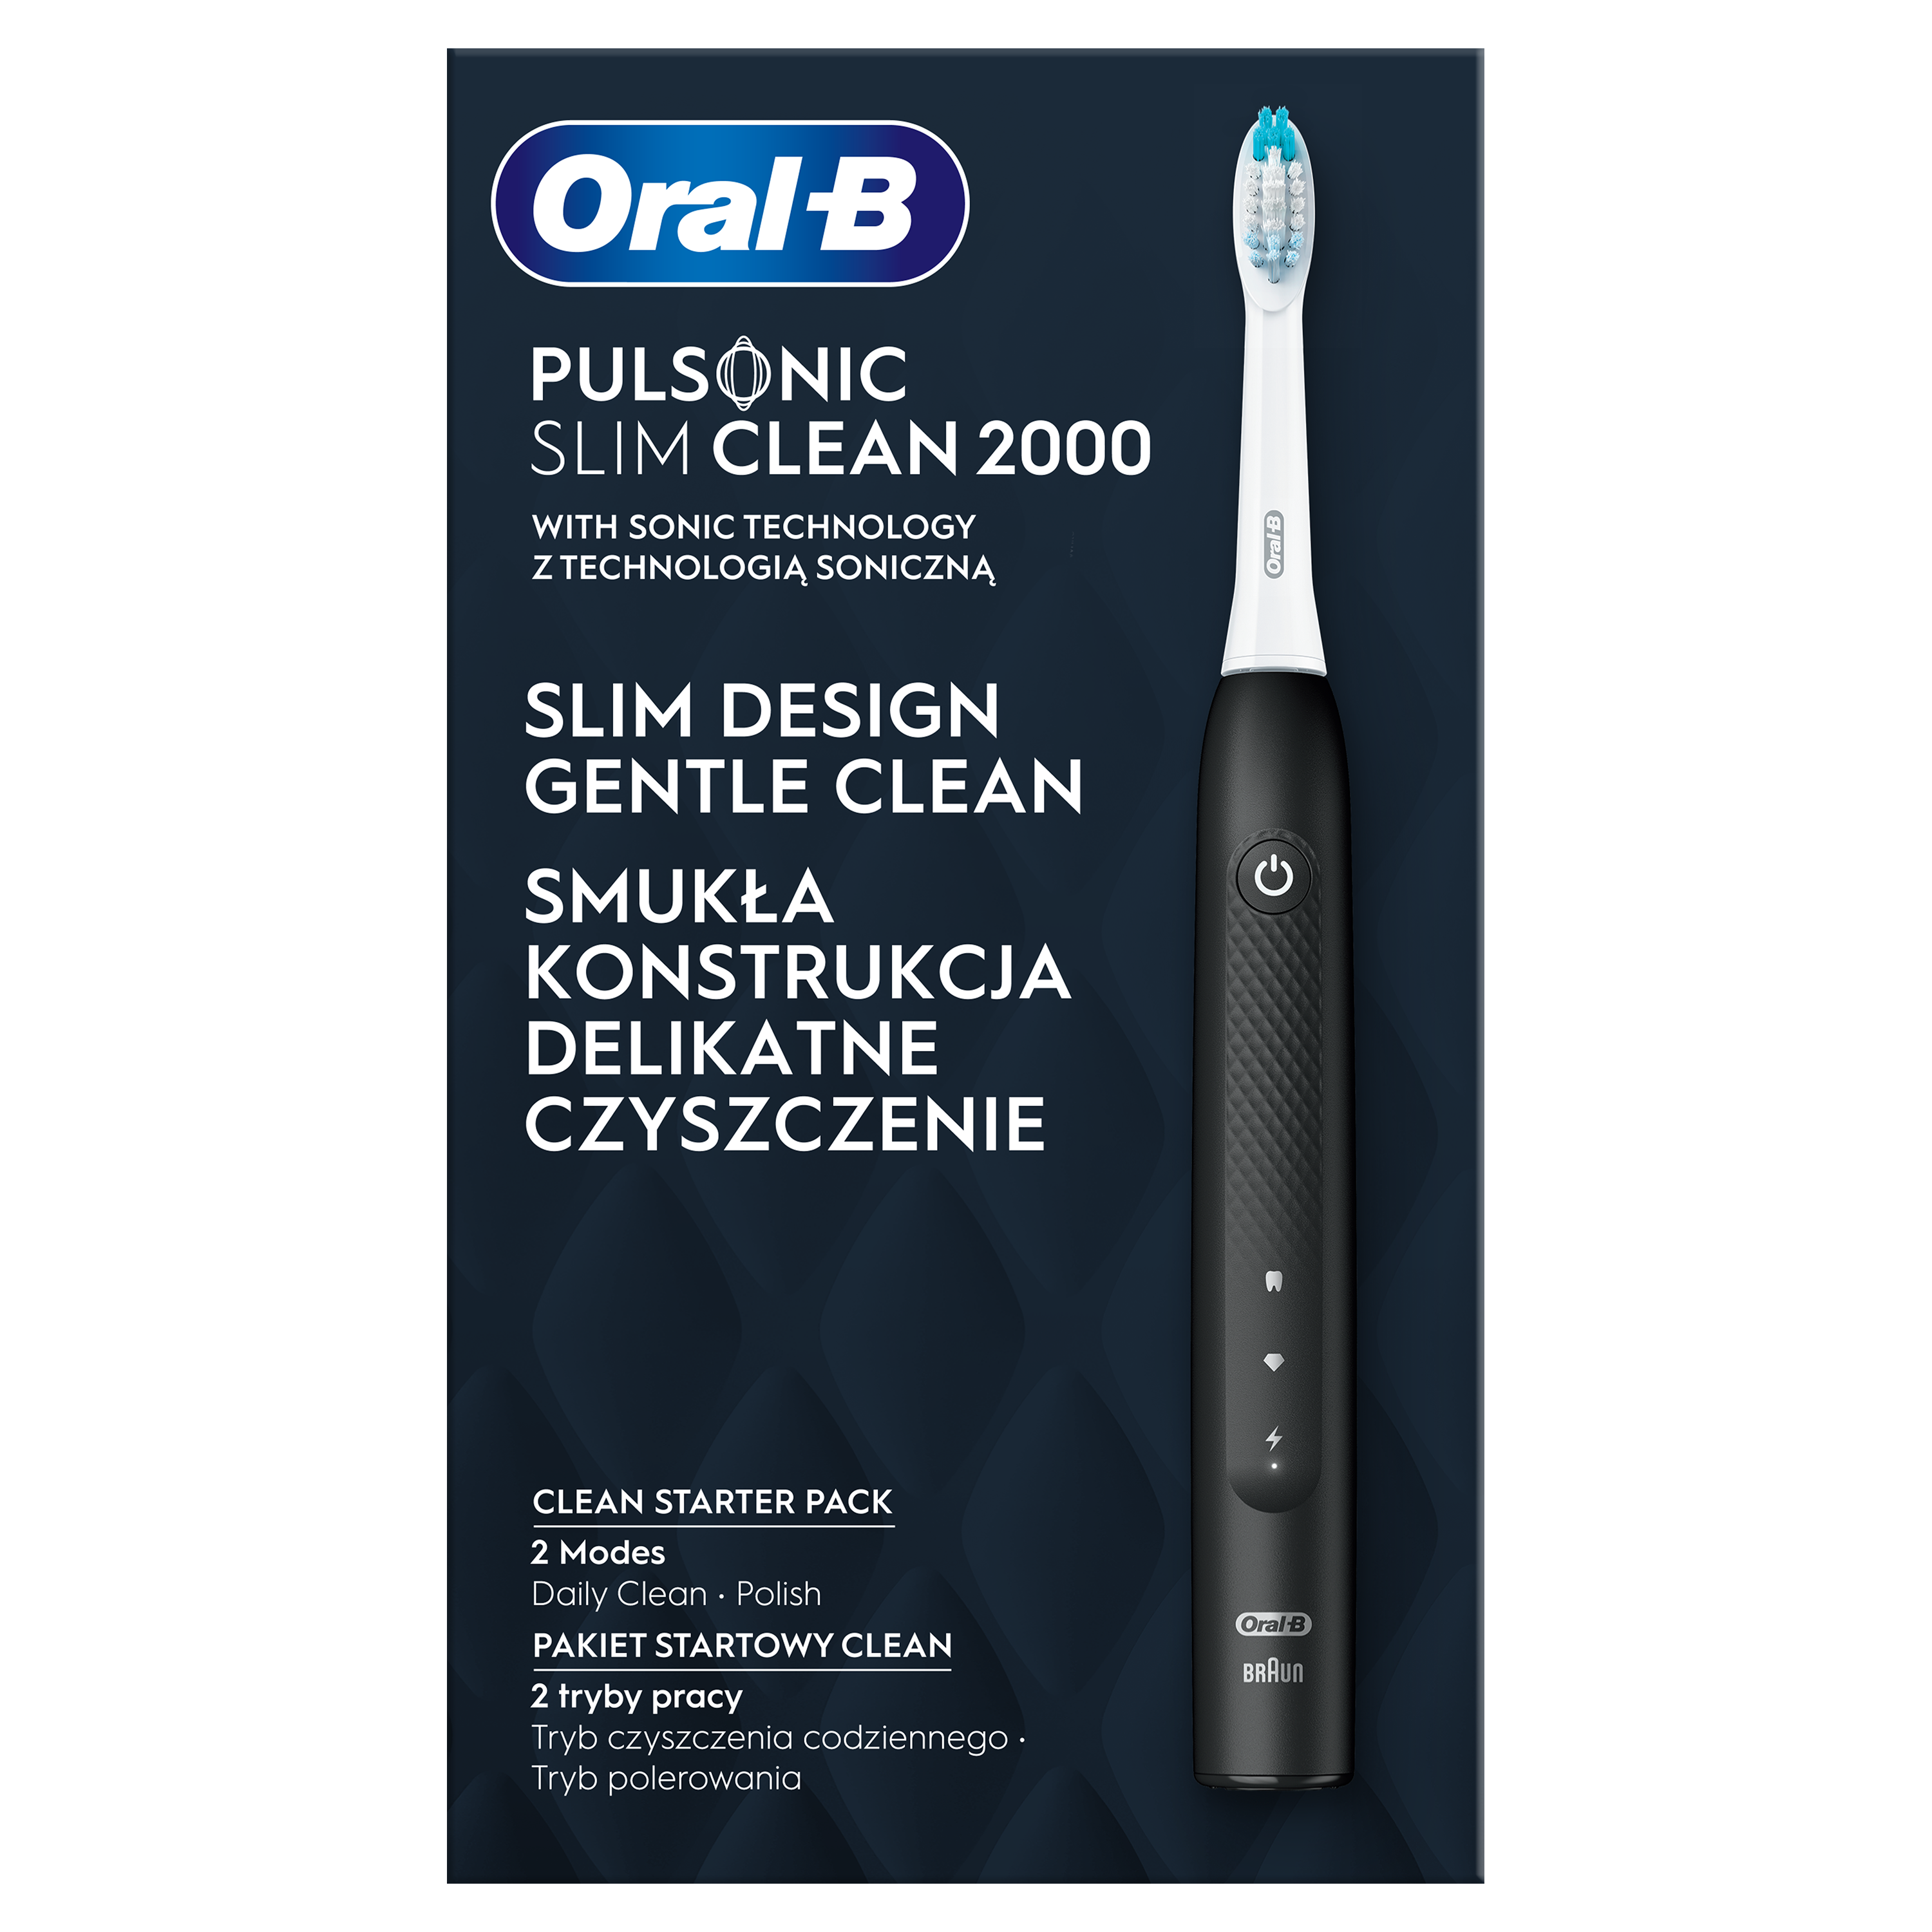 Електрична зубна щітка Oral-B Pulsonic Slim Clean 2000 S111.513.2 типу 3748, чорний - фото 2